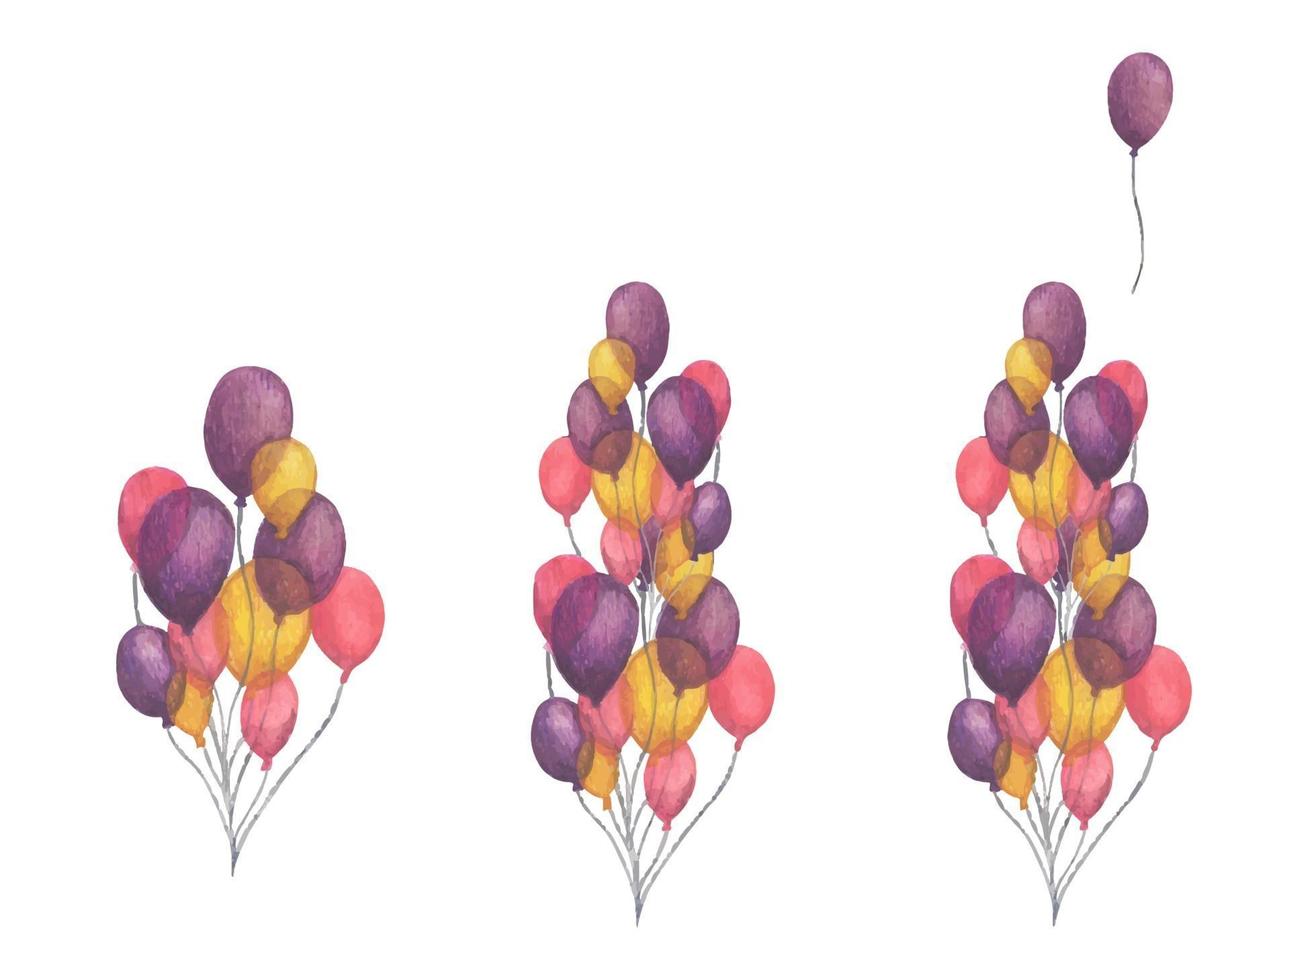 pacote de balões coloridos de festa. ilustração em aquarela. vetor